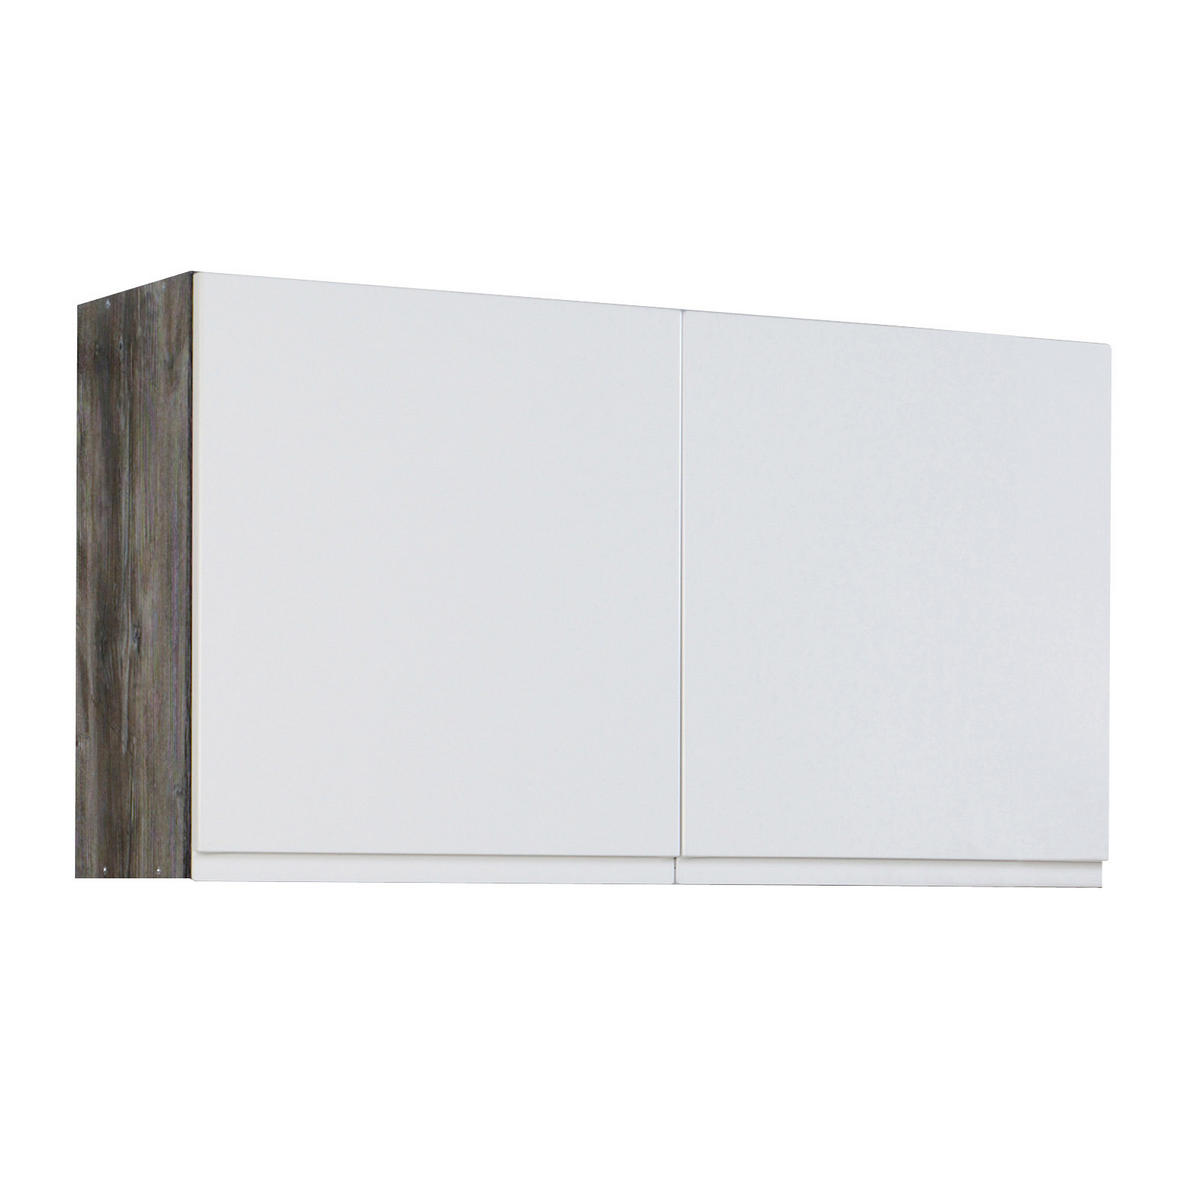 Küchenleerblock 270 cm breit in Weiß online finden